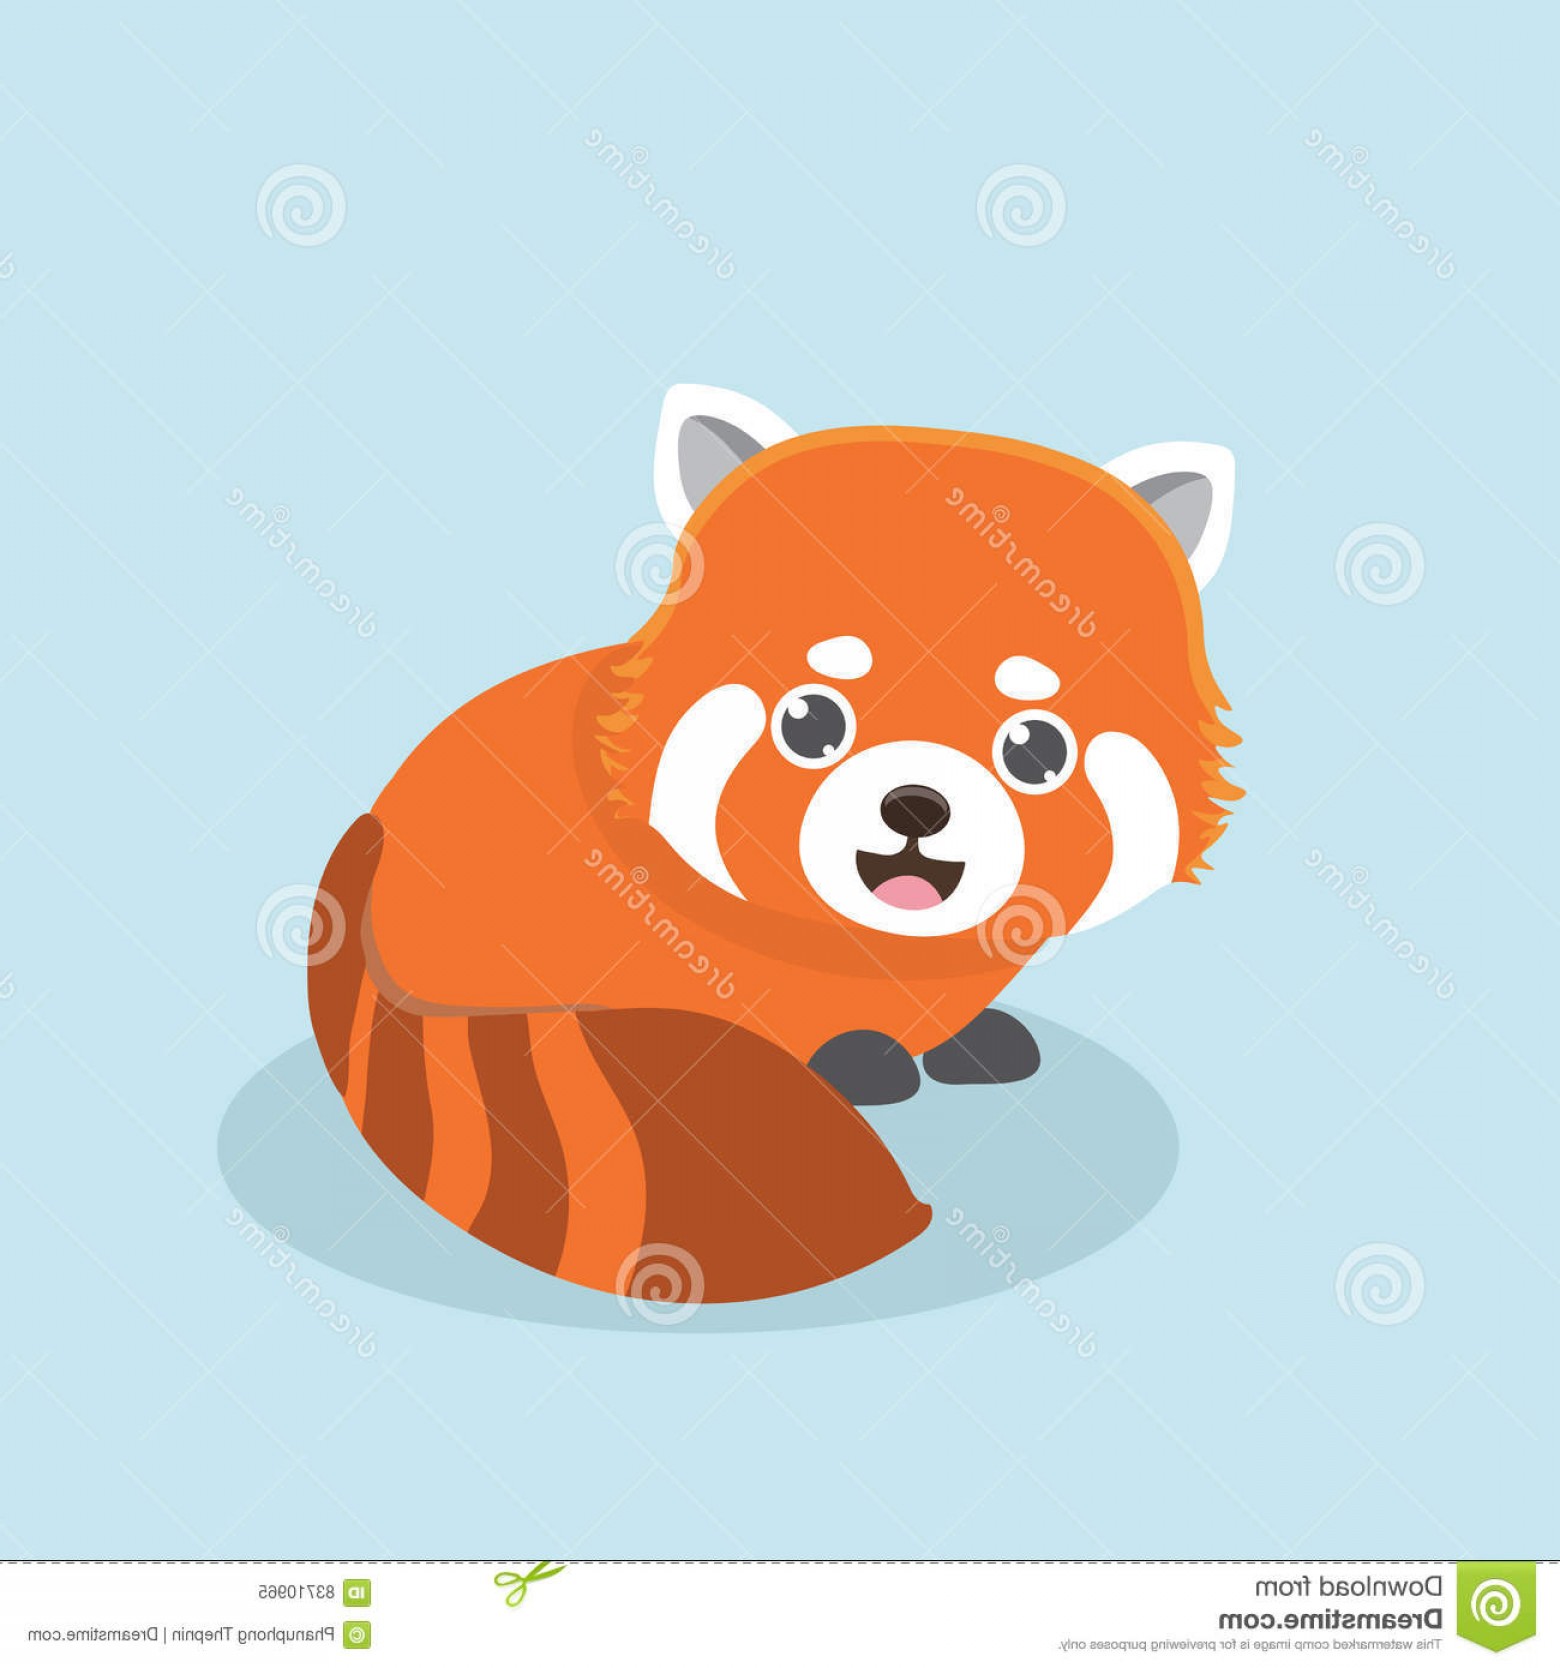 Схематичное изображение красной панды